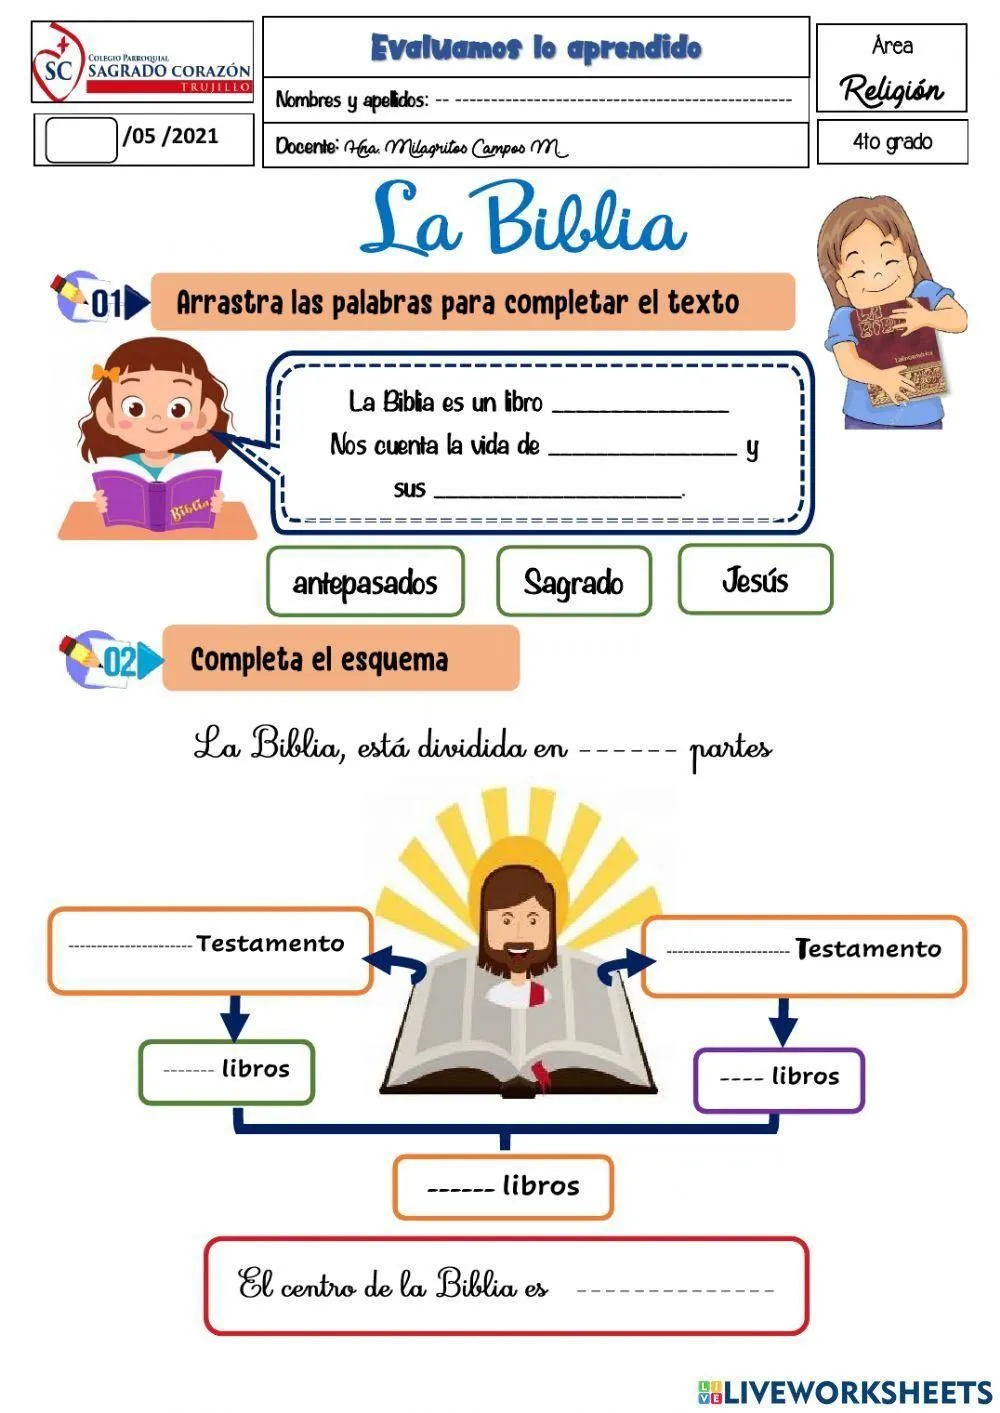 La Biblia exercise for Cuarto grado de primaria | Live Worksheets